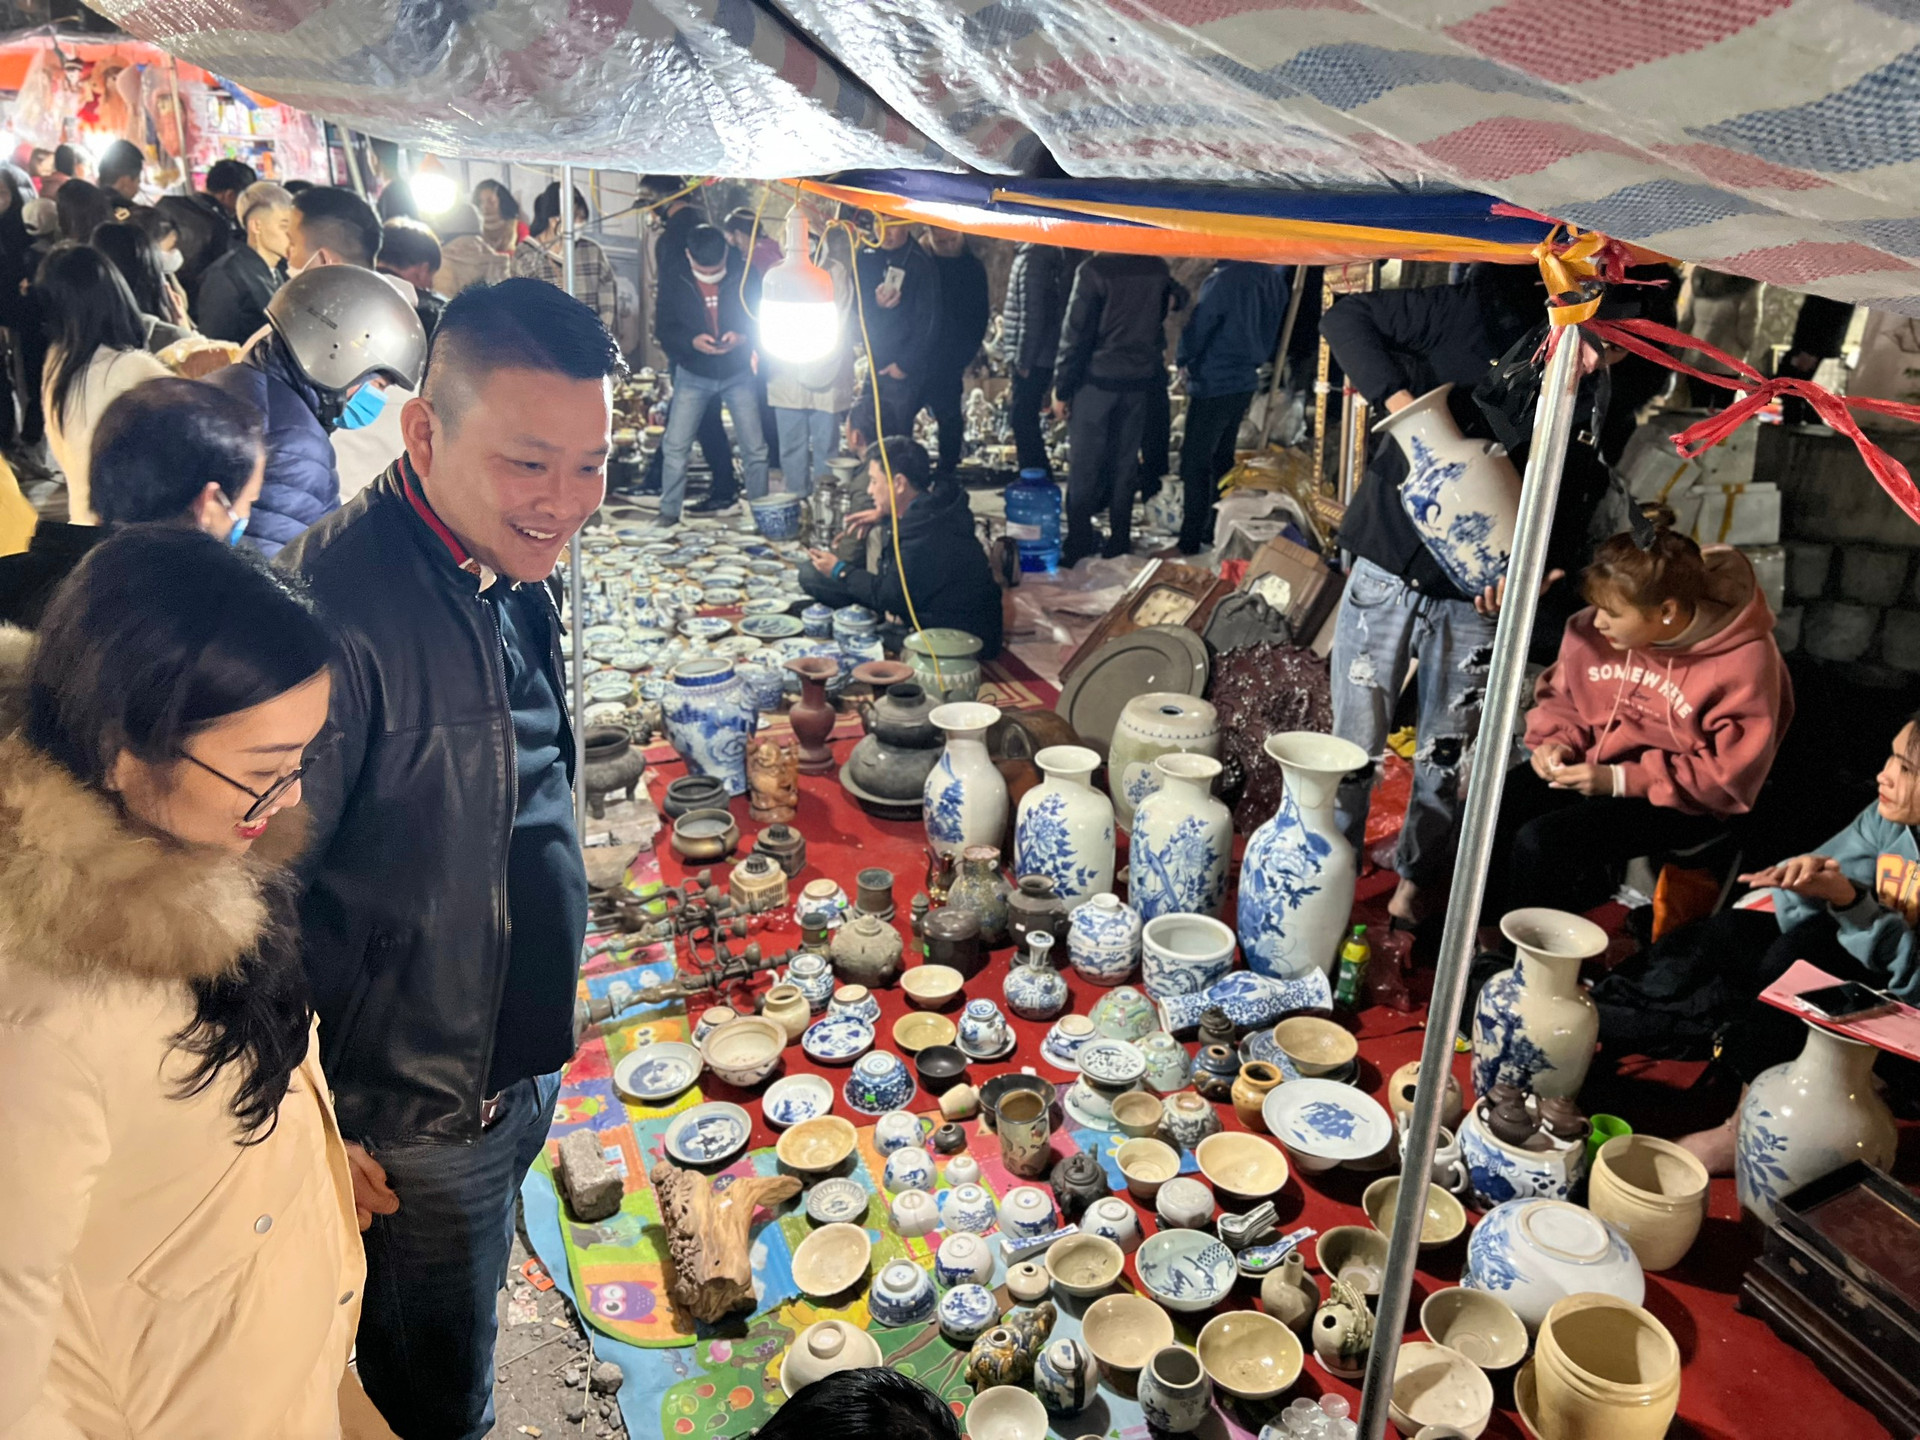 Phiên chợ cả năm chỉ họp một lần, đông nhất vào nửa đêm và rạng sáng, cách Hà Nội chưa tới 100km- Ảnh 3.